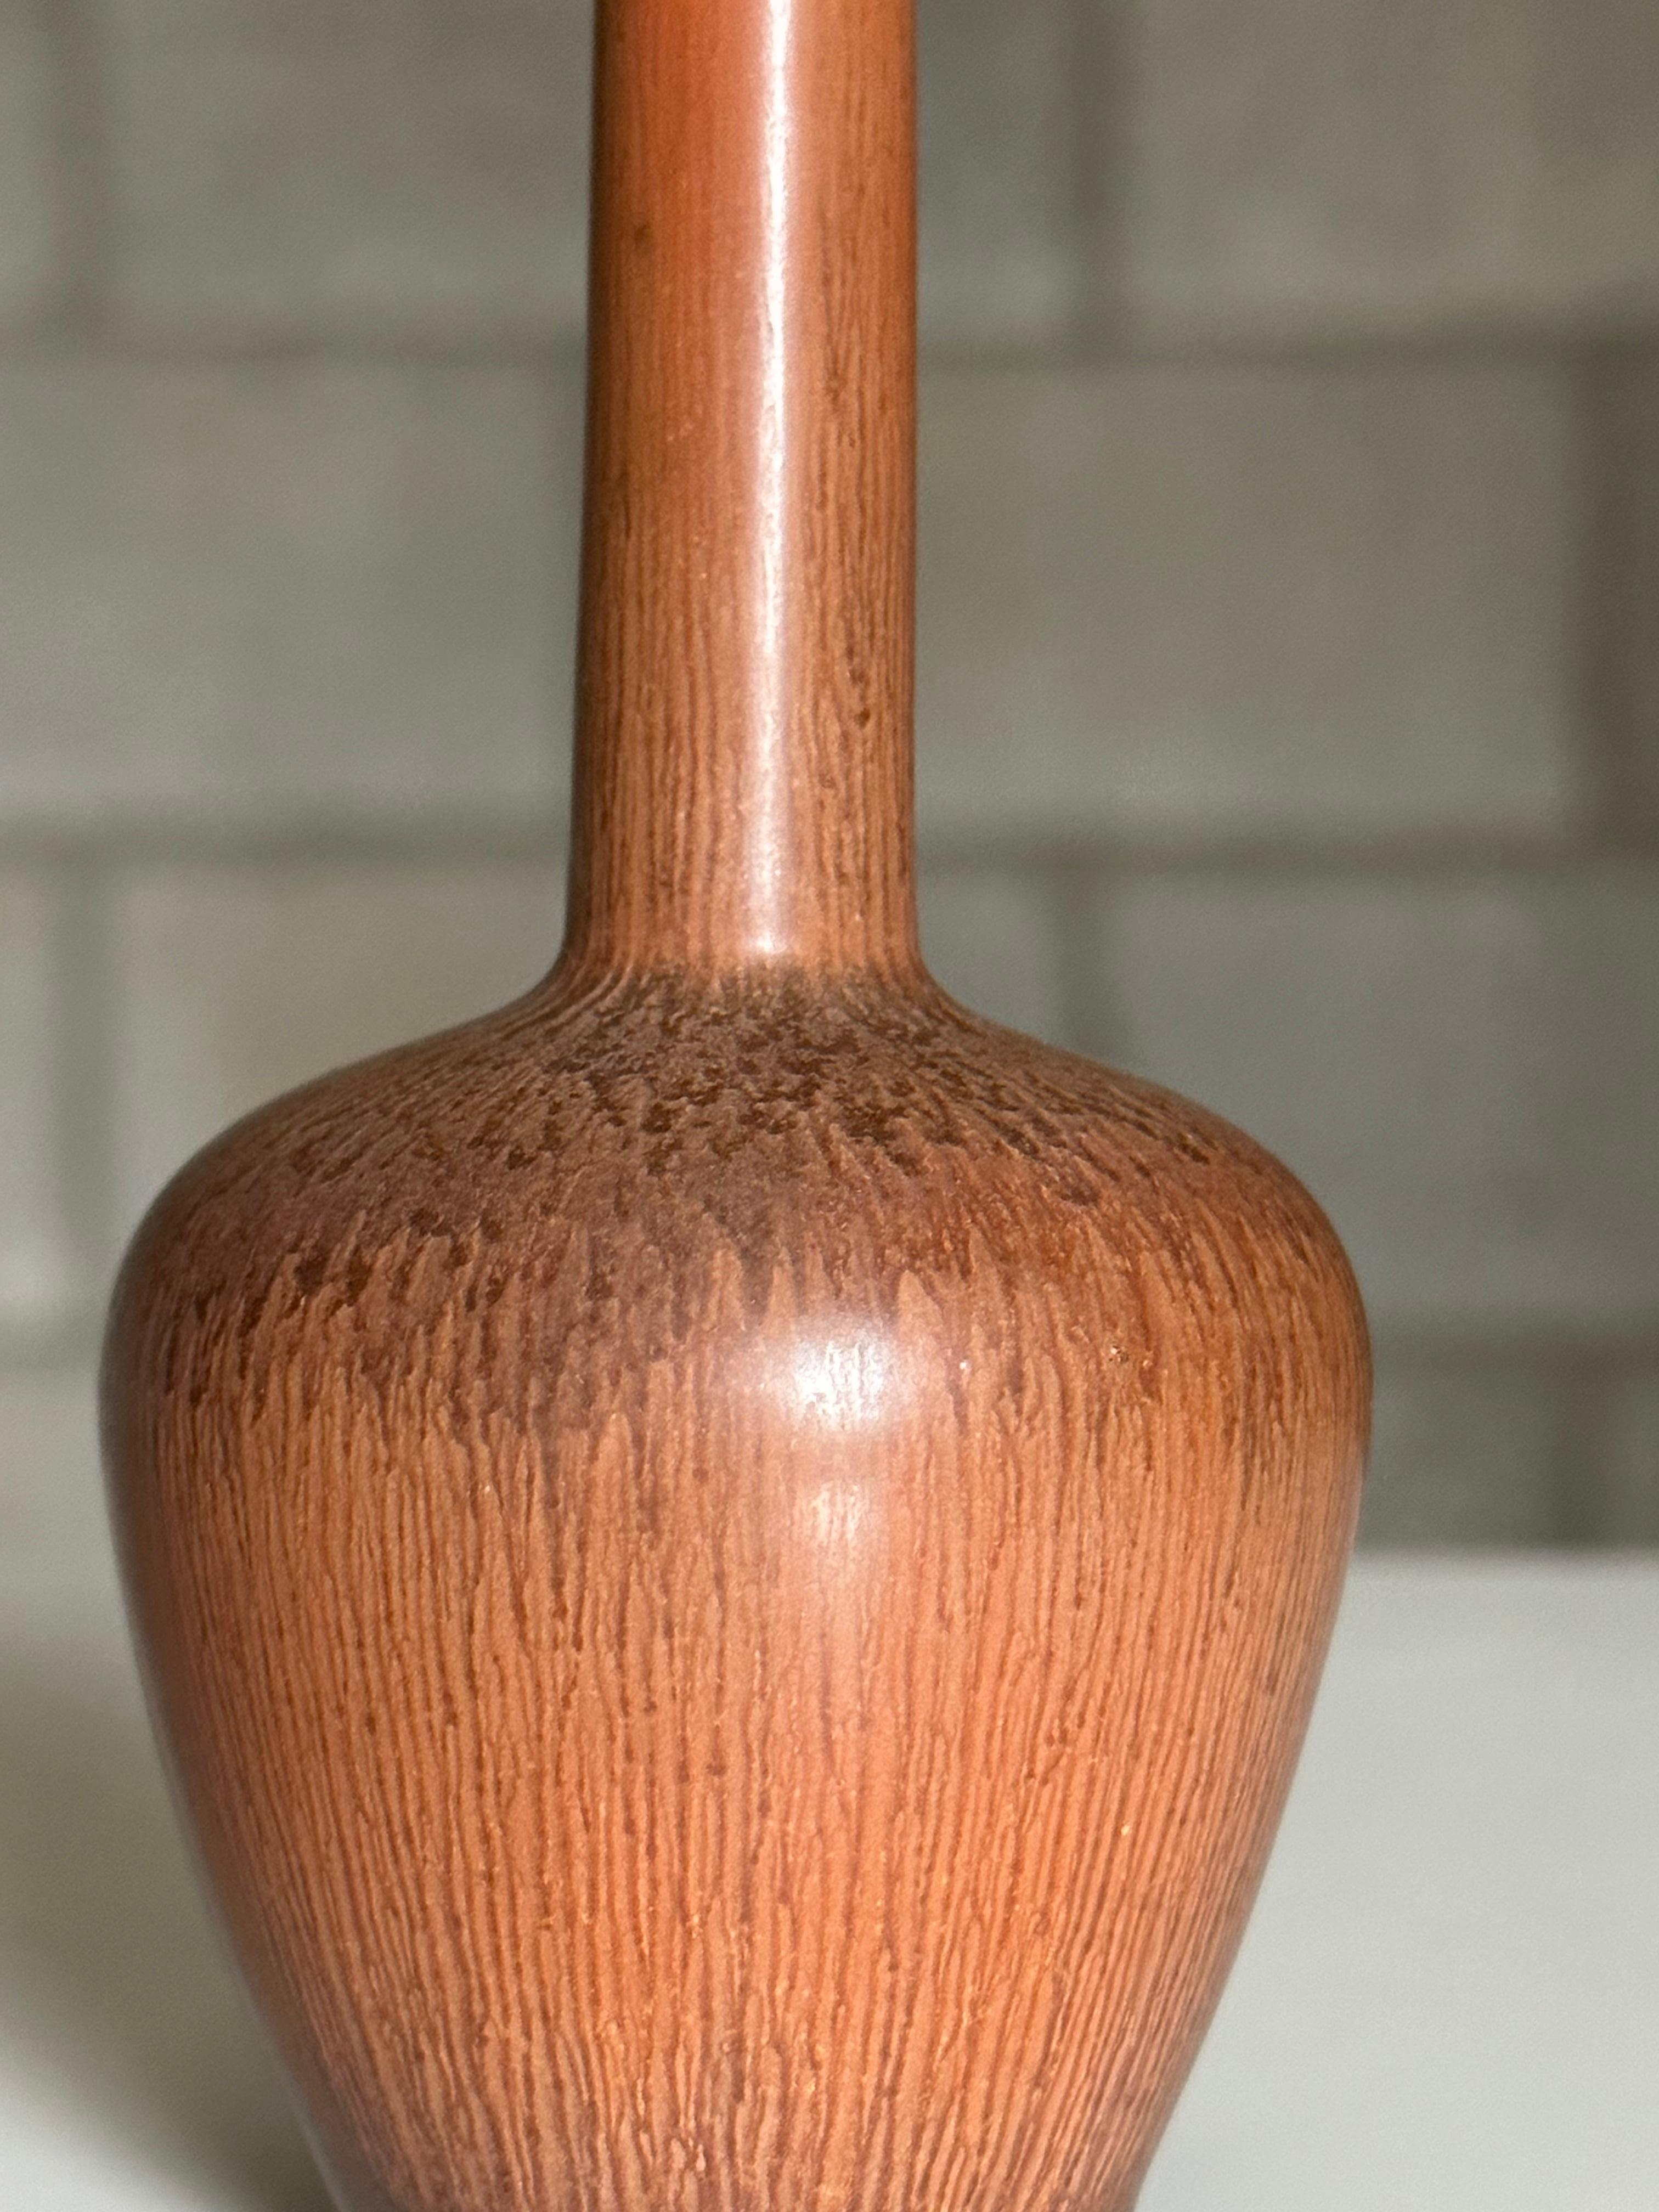 Magnifique petit vase conçu par Carl-Harry Stålhane pour Rörstrand. Il se caractérise par un corps bulbeux et un cou fin et long. Le vase est complété par une superbe couleur terre cuite.